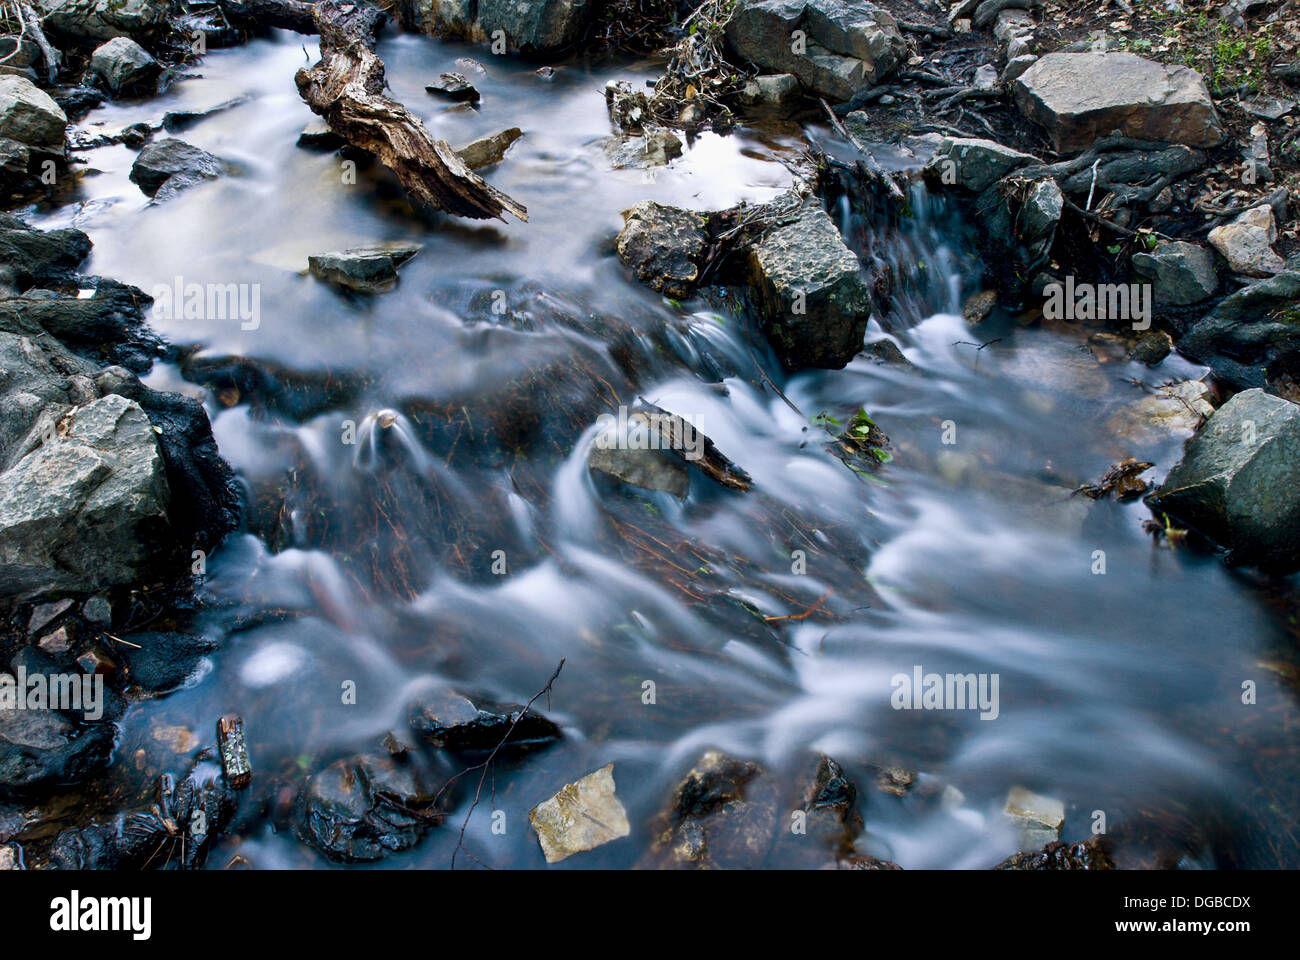 Las Lastras creek, Fuencaliente, Sierra Madrona, Ciudad Real province,  Castilla-La Mancha, Spain Stock Photo - Alamy